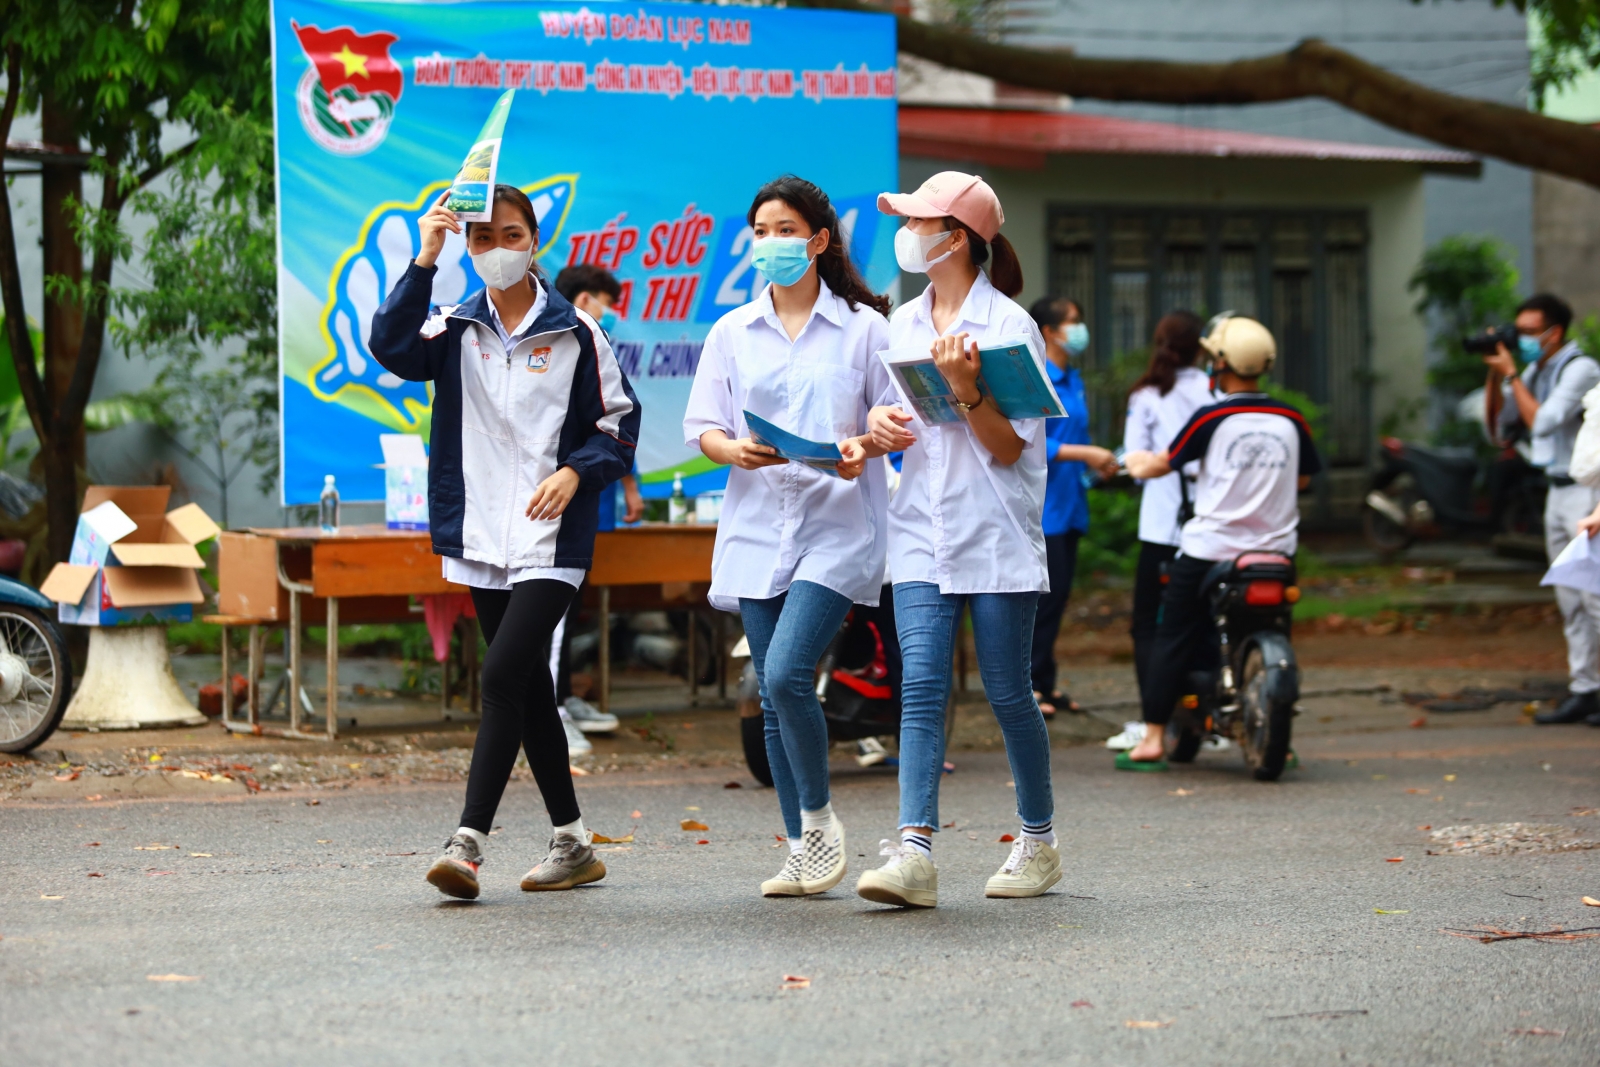 Bắc Giang: Hơn 400 bài thi đạt điểm 10 kỳ thi tốt nghiệp THPT năm 2021 đợt 1